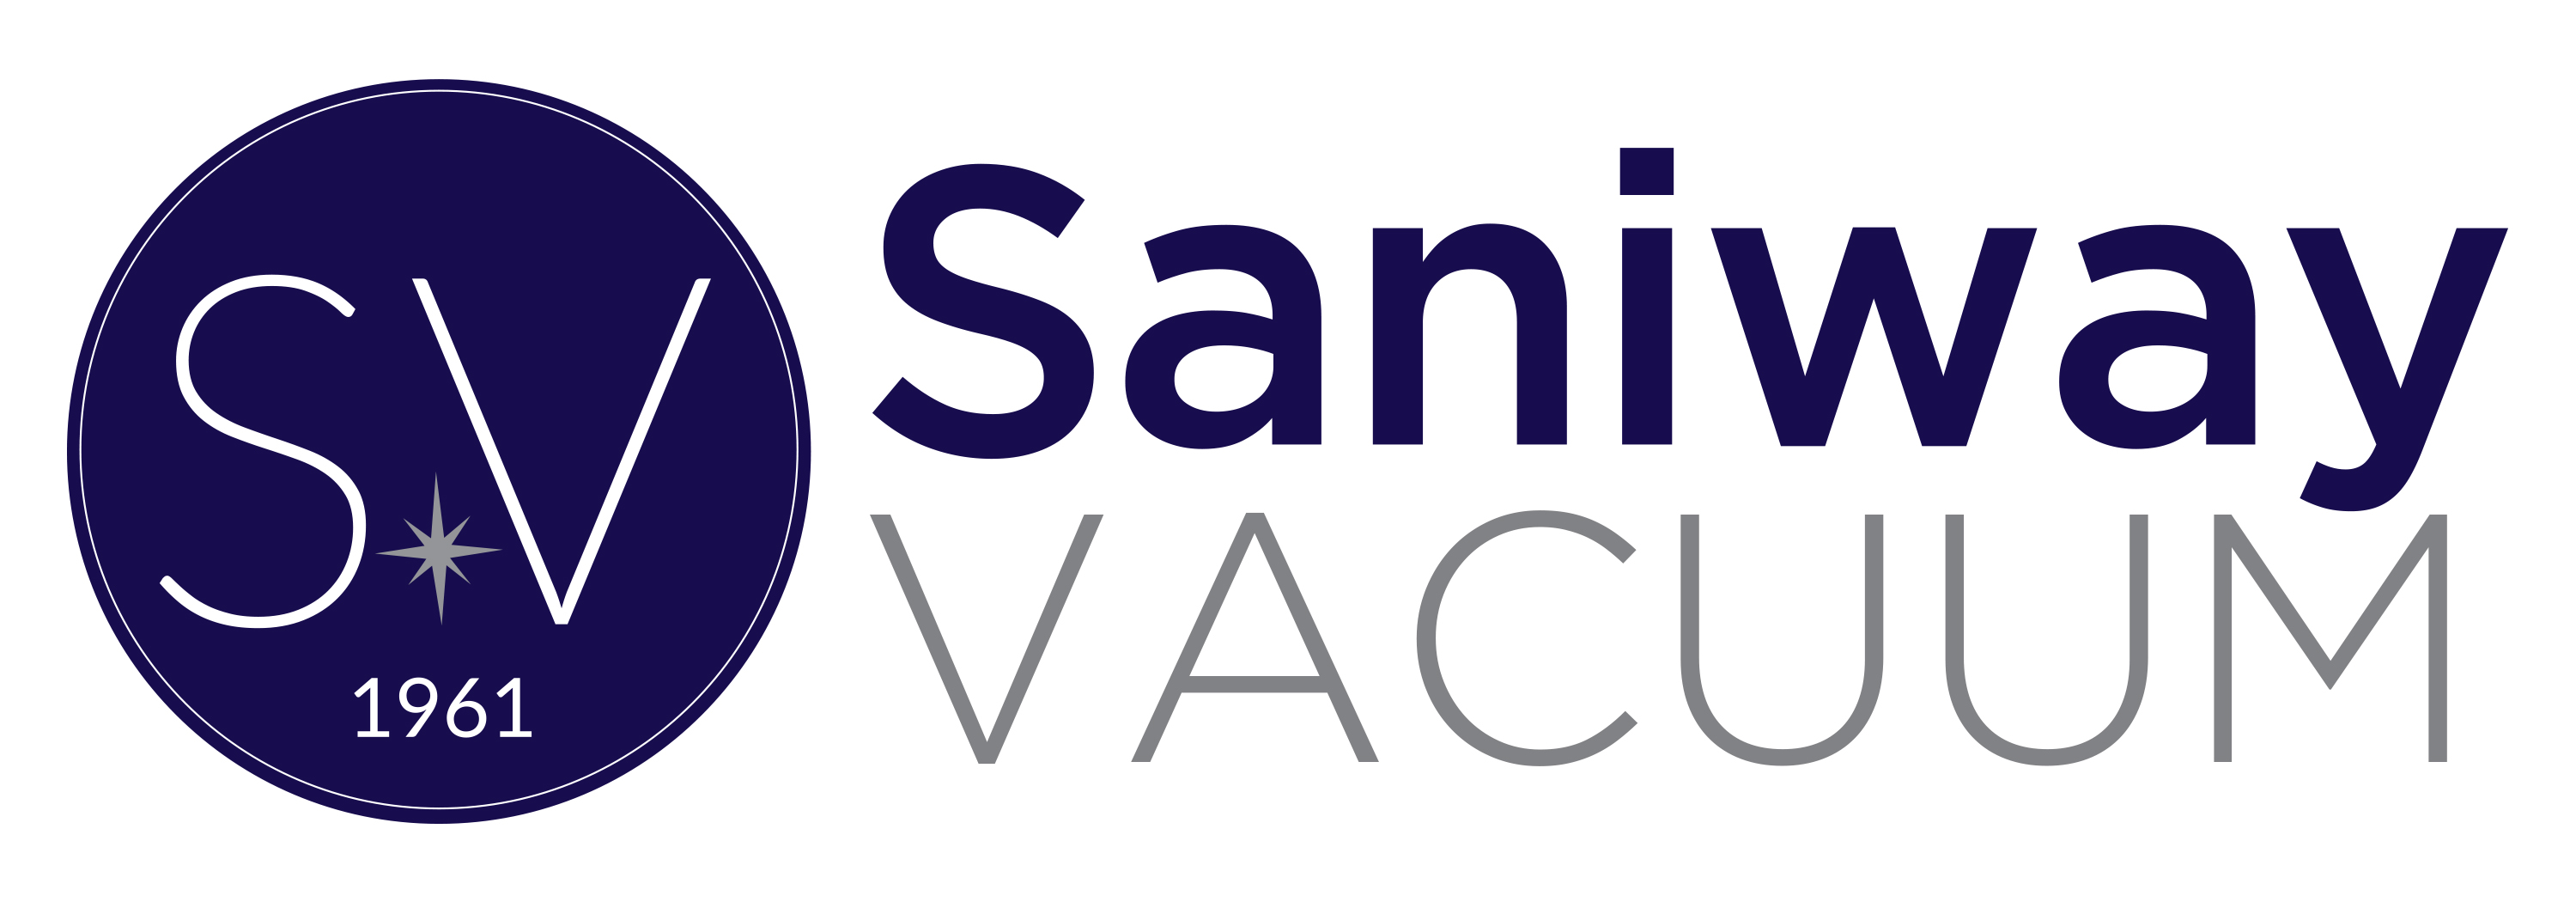 Saniway Vacuum